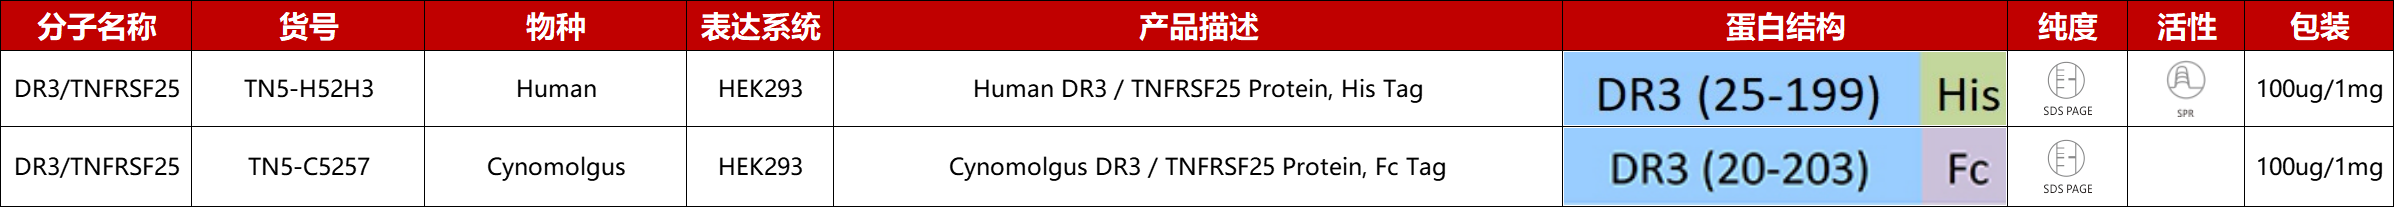 DR3重组蛋白产品列表